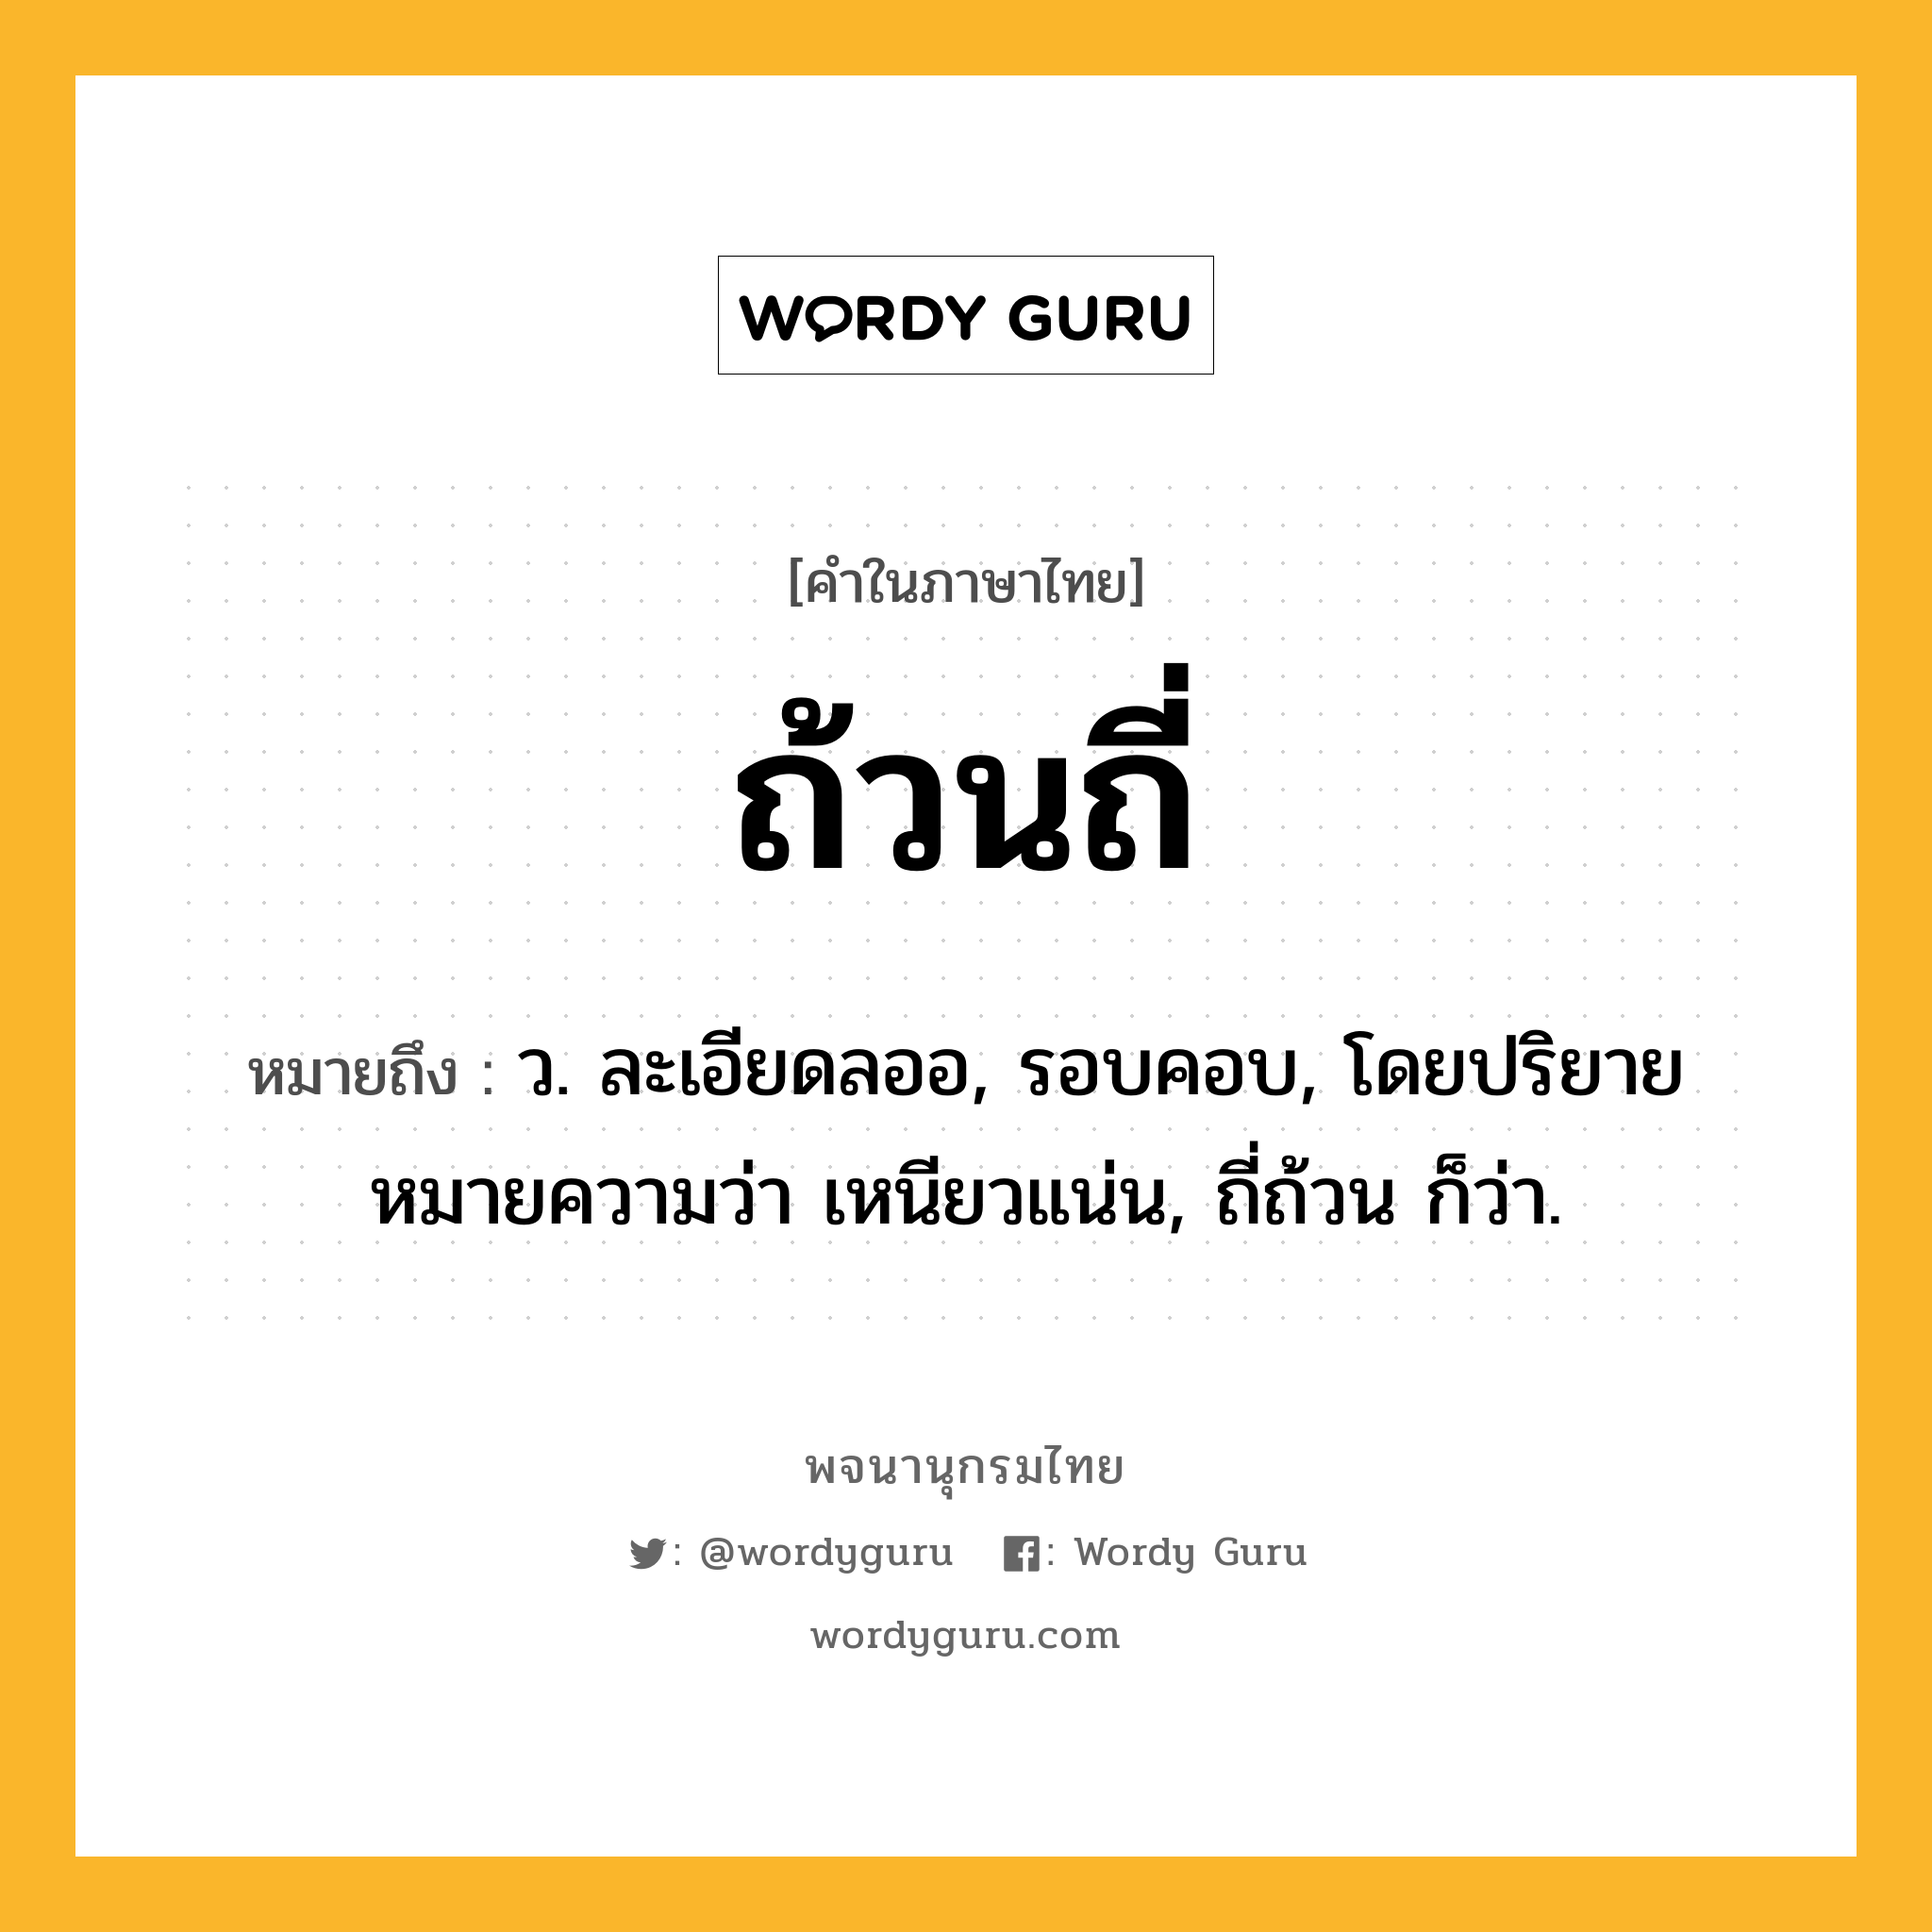 ถ้วนถี่ หมายถึงอะไร?, คำในภาษาไทย ถ้วนถี่ หมายถึง ว. ละเอียดลออ, รอบคอบ, โดยปริยายหมายความว่า เหนียวแน่น, ถี่ถ้วน ก็ว่า.